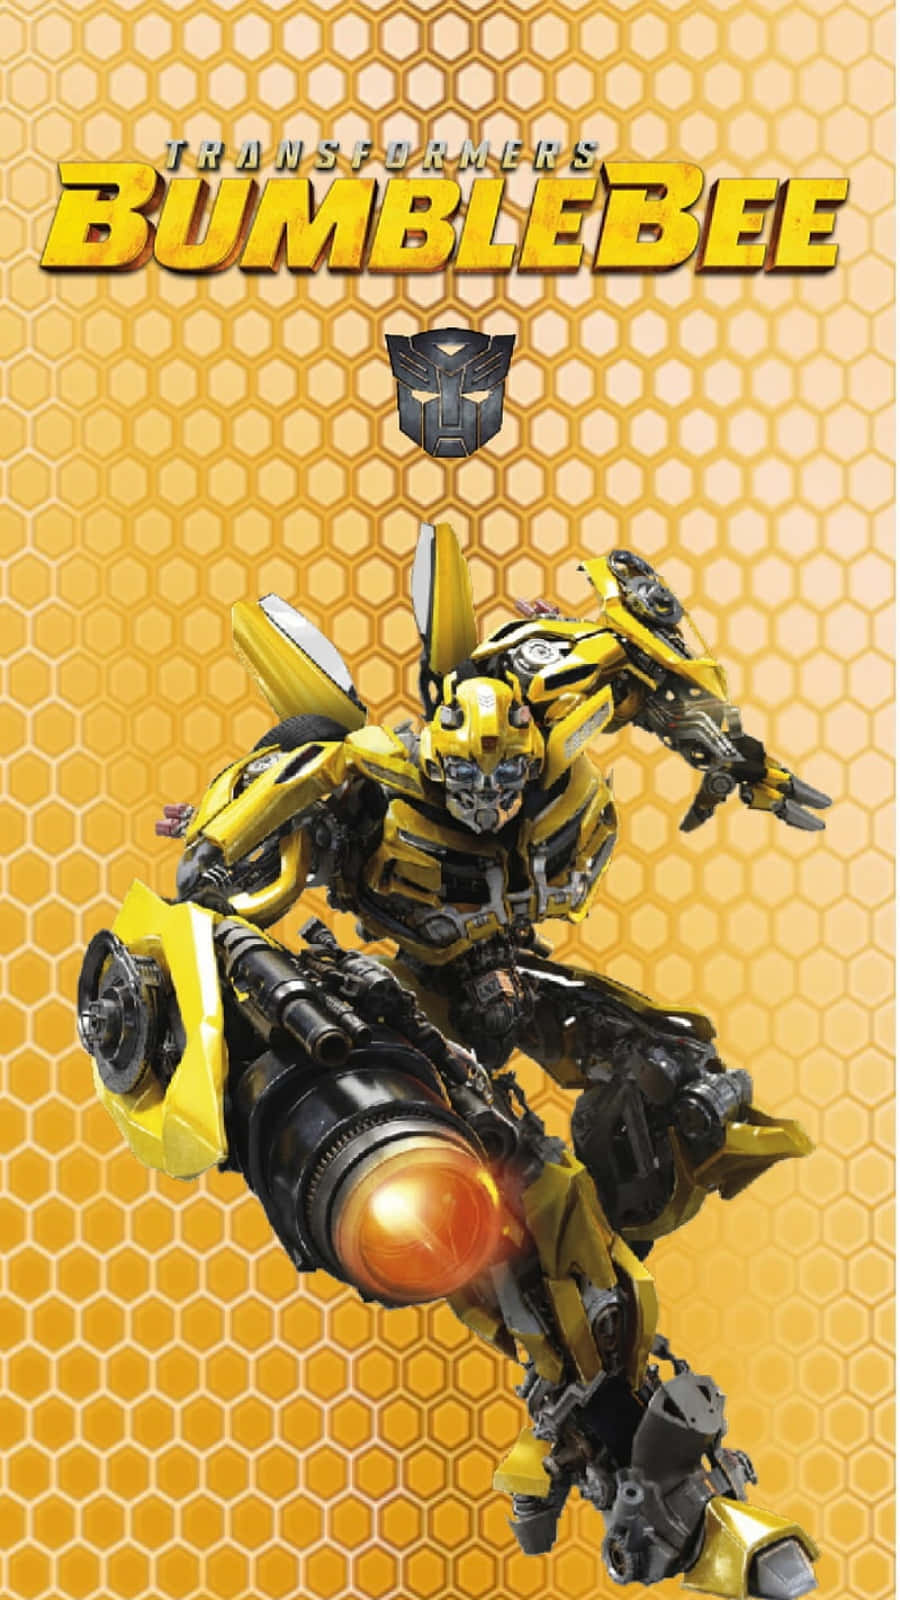 Et nærbillede af Bumblebees ikoniske gule og sorte æstetik.